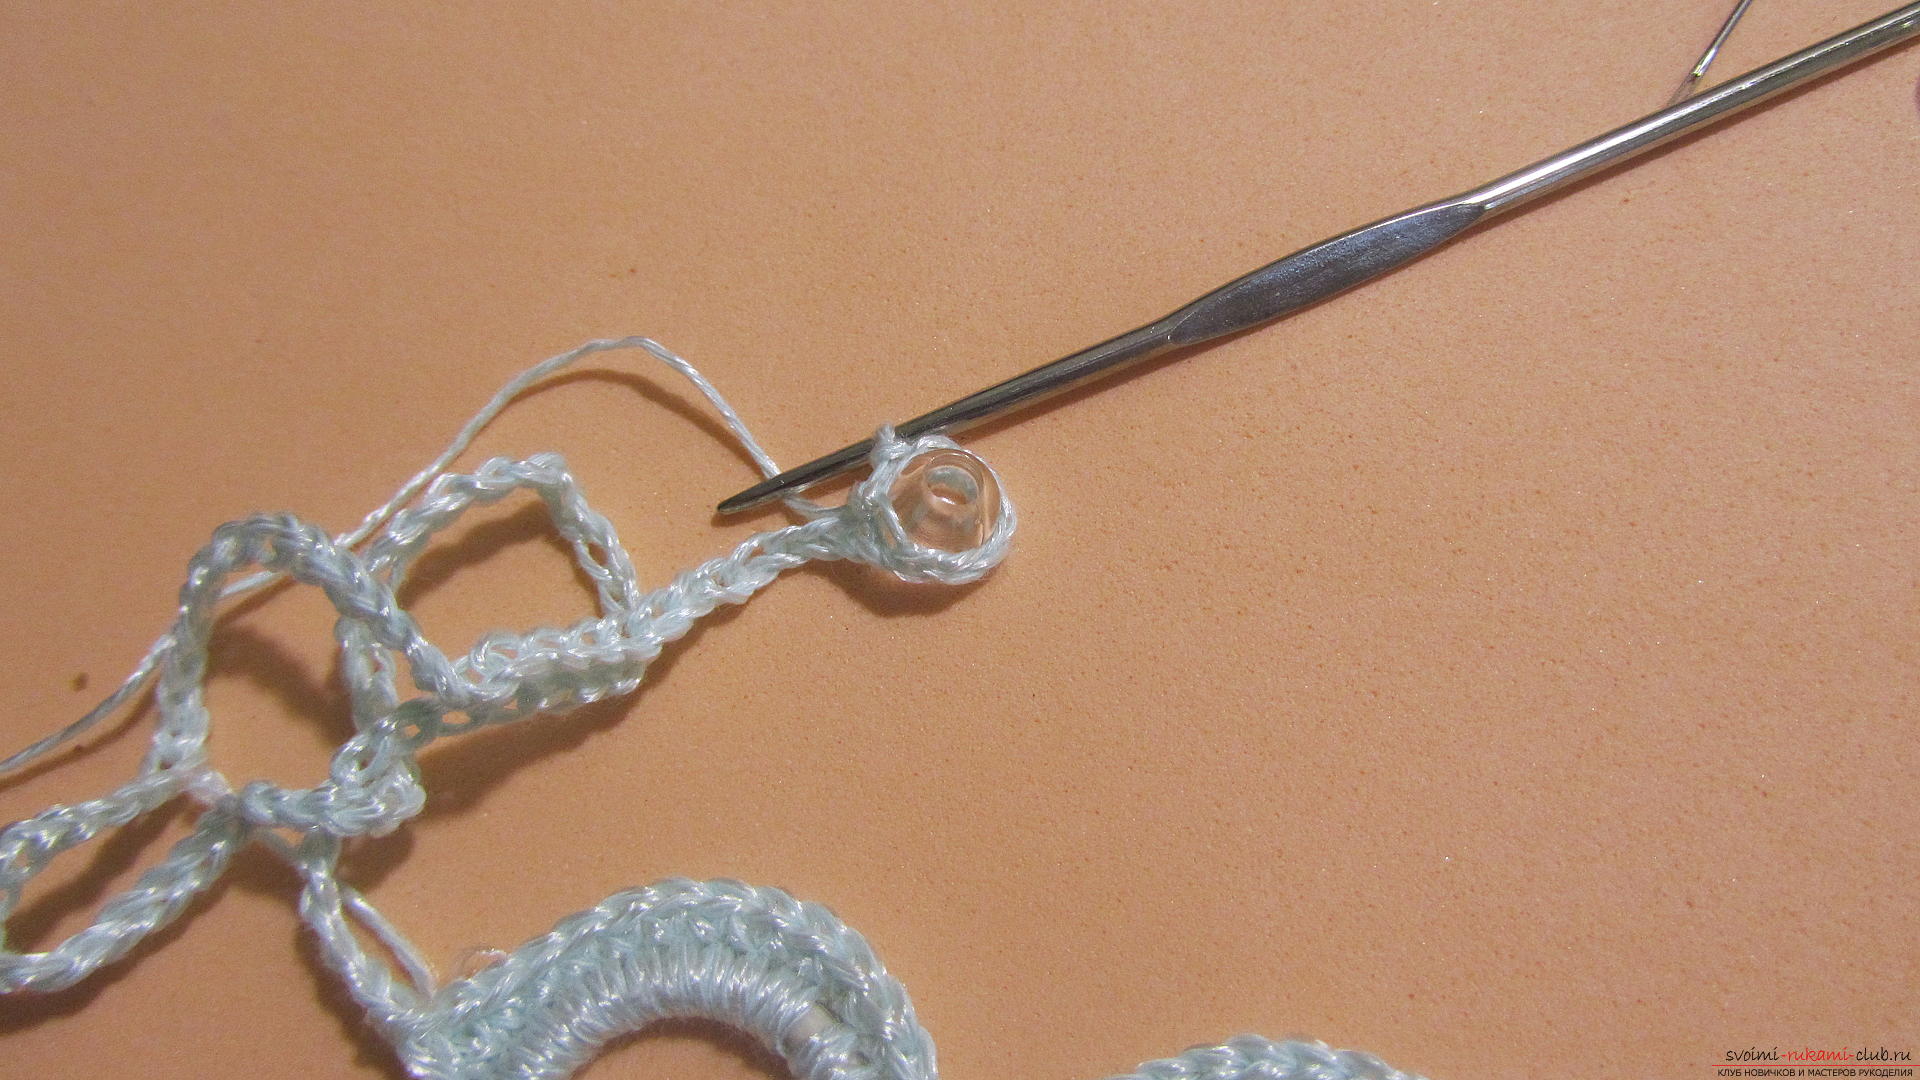 Этот мастер-класс научит как сделать украшения своими руками, самодельное ожерелье можно связать крючком. Фото №27